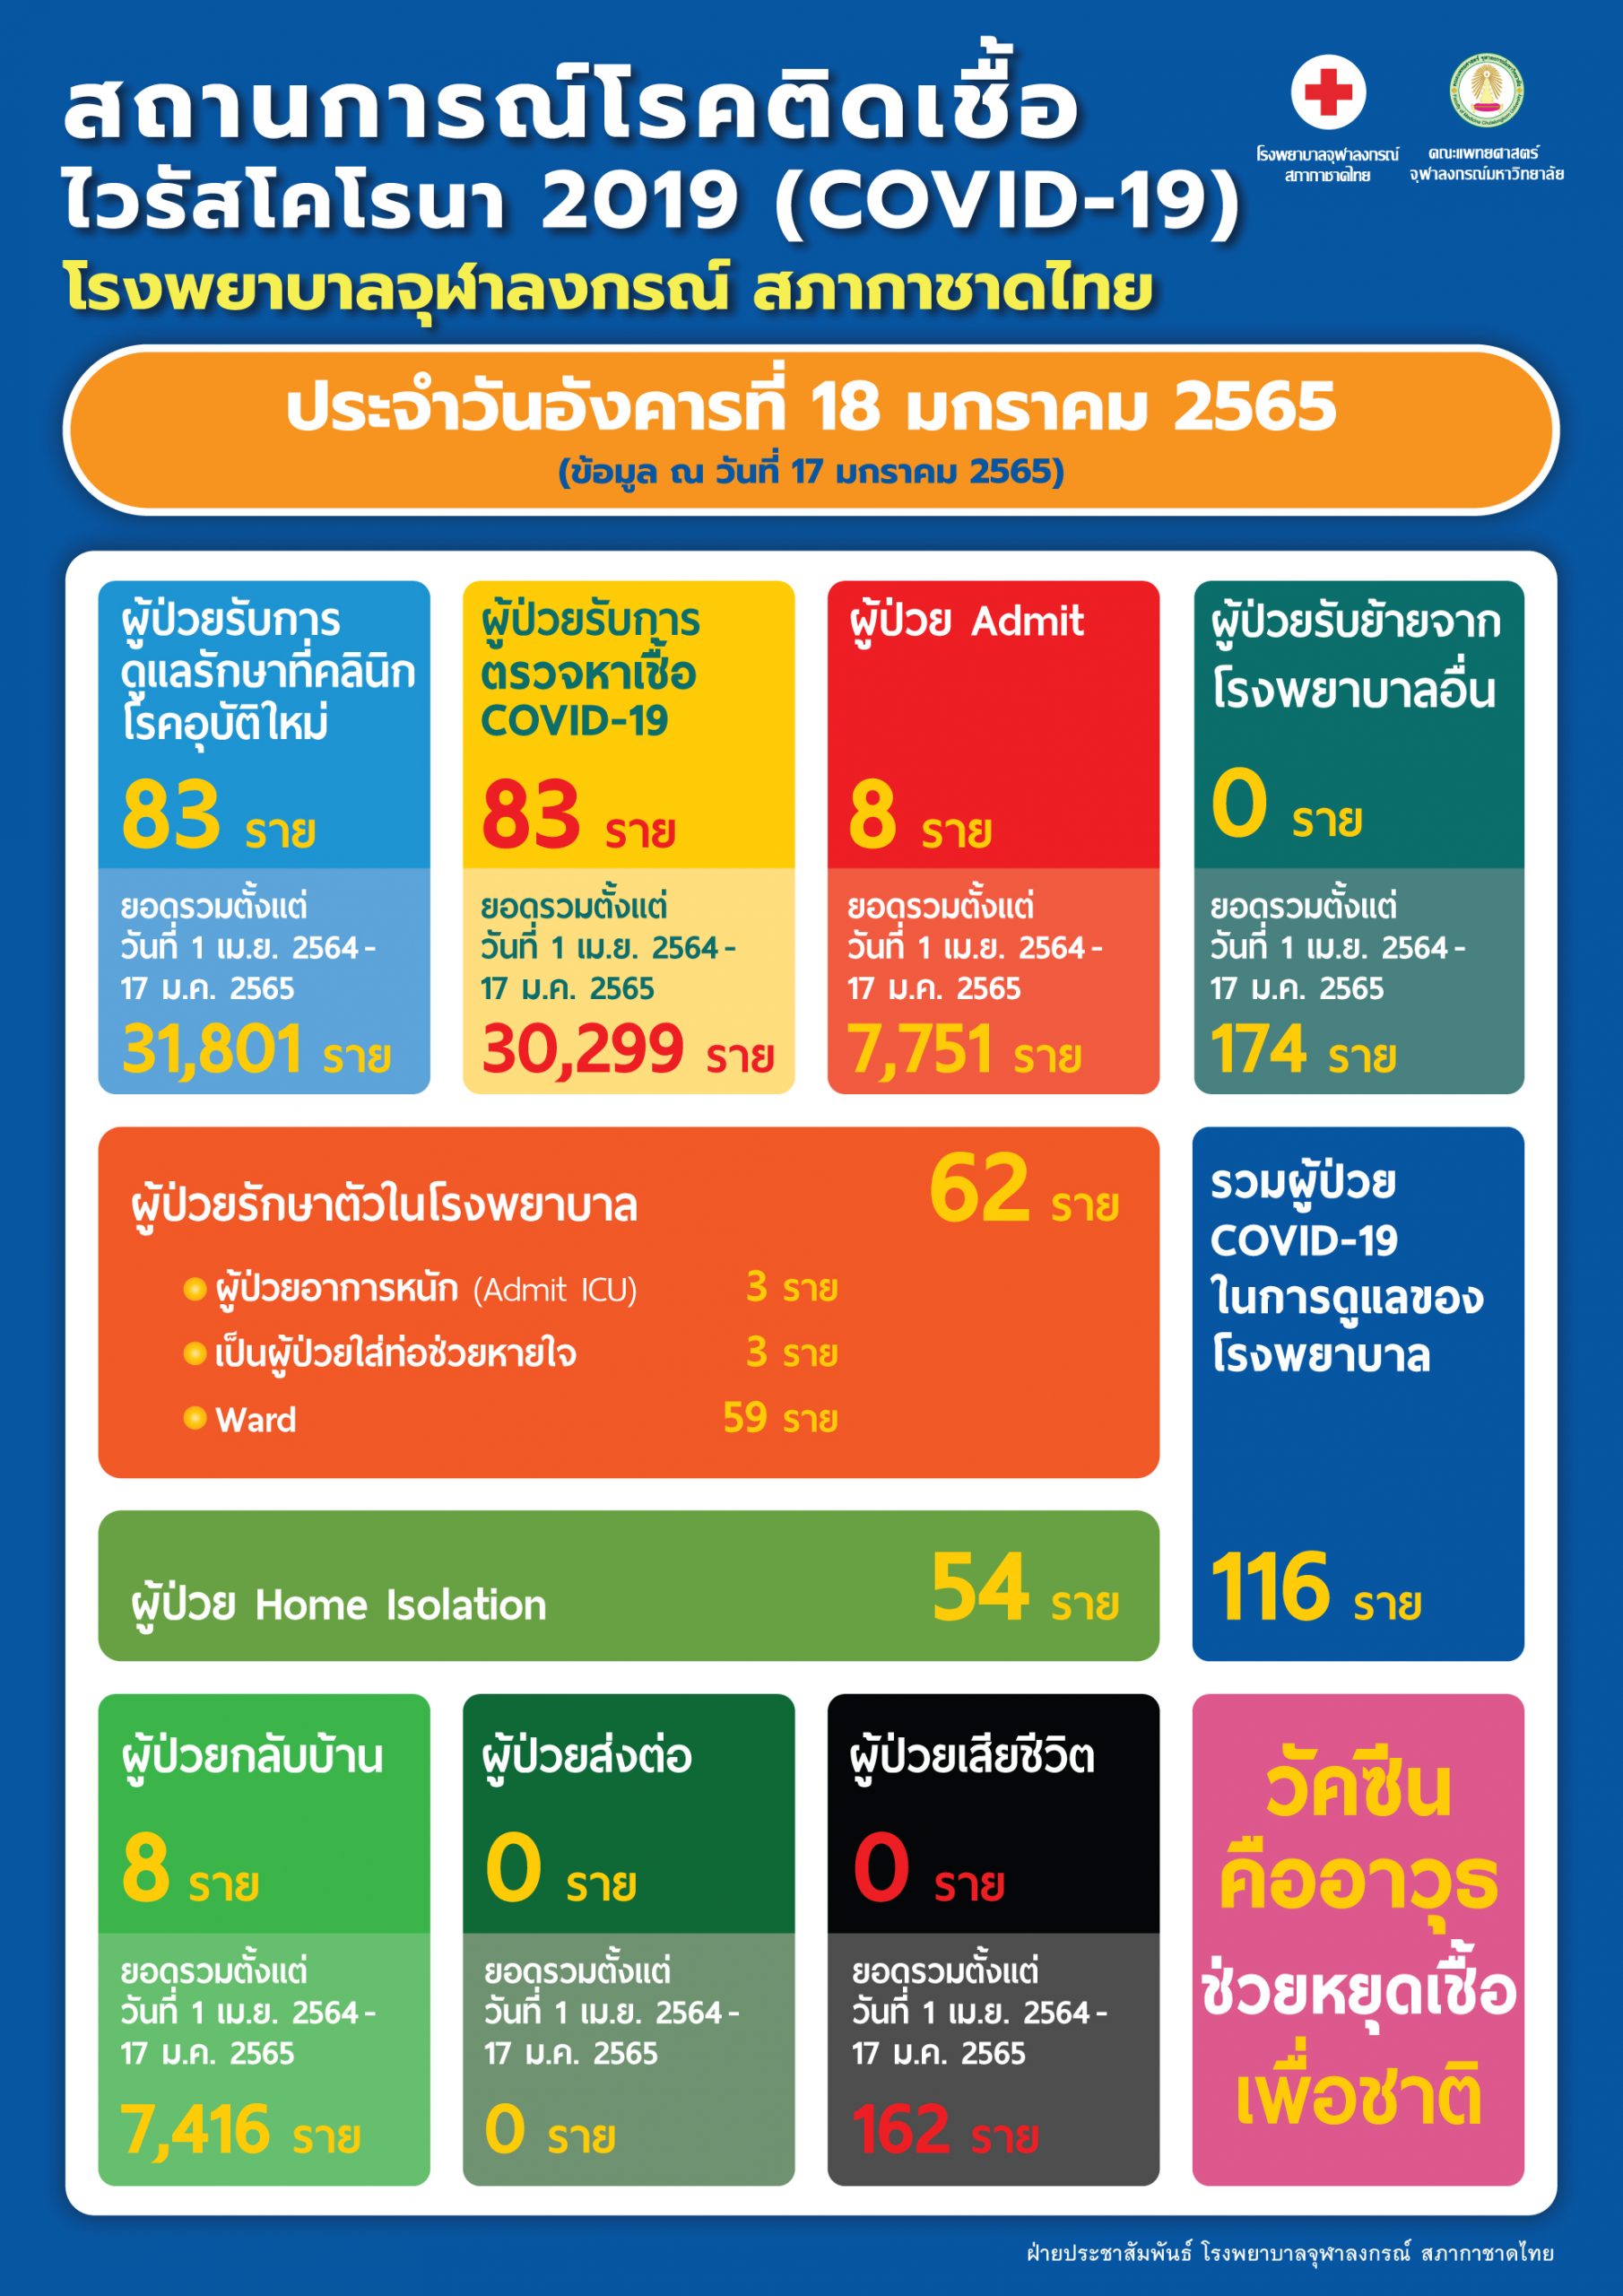 สถานการณ์โรคติดเชื้อไวรัสโคโรนา 2019 (COVID-19) โรงพยาบาลจุฬาลงกรณ์ สภากาชาดไทย ประจำวันอังคารที่ 18 มกราคม 2565